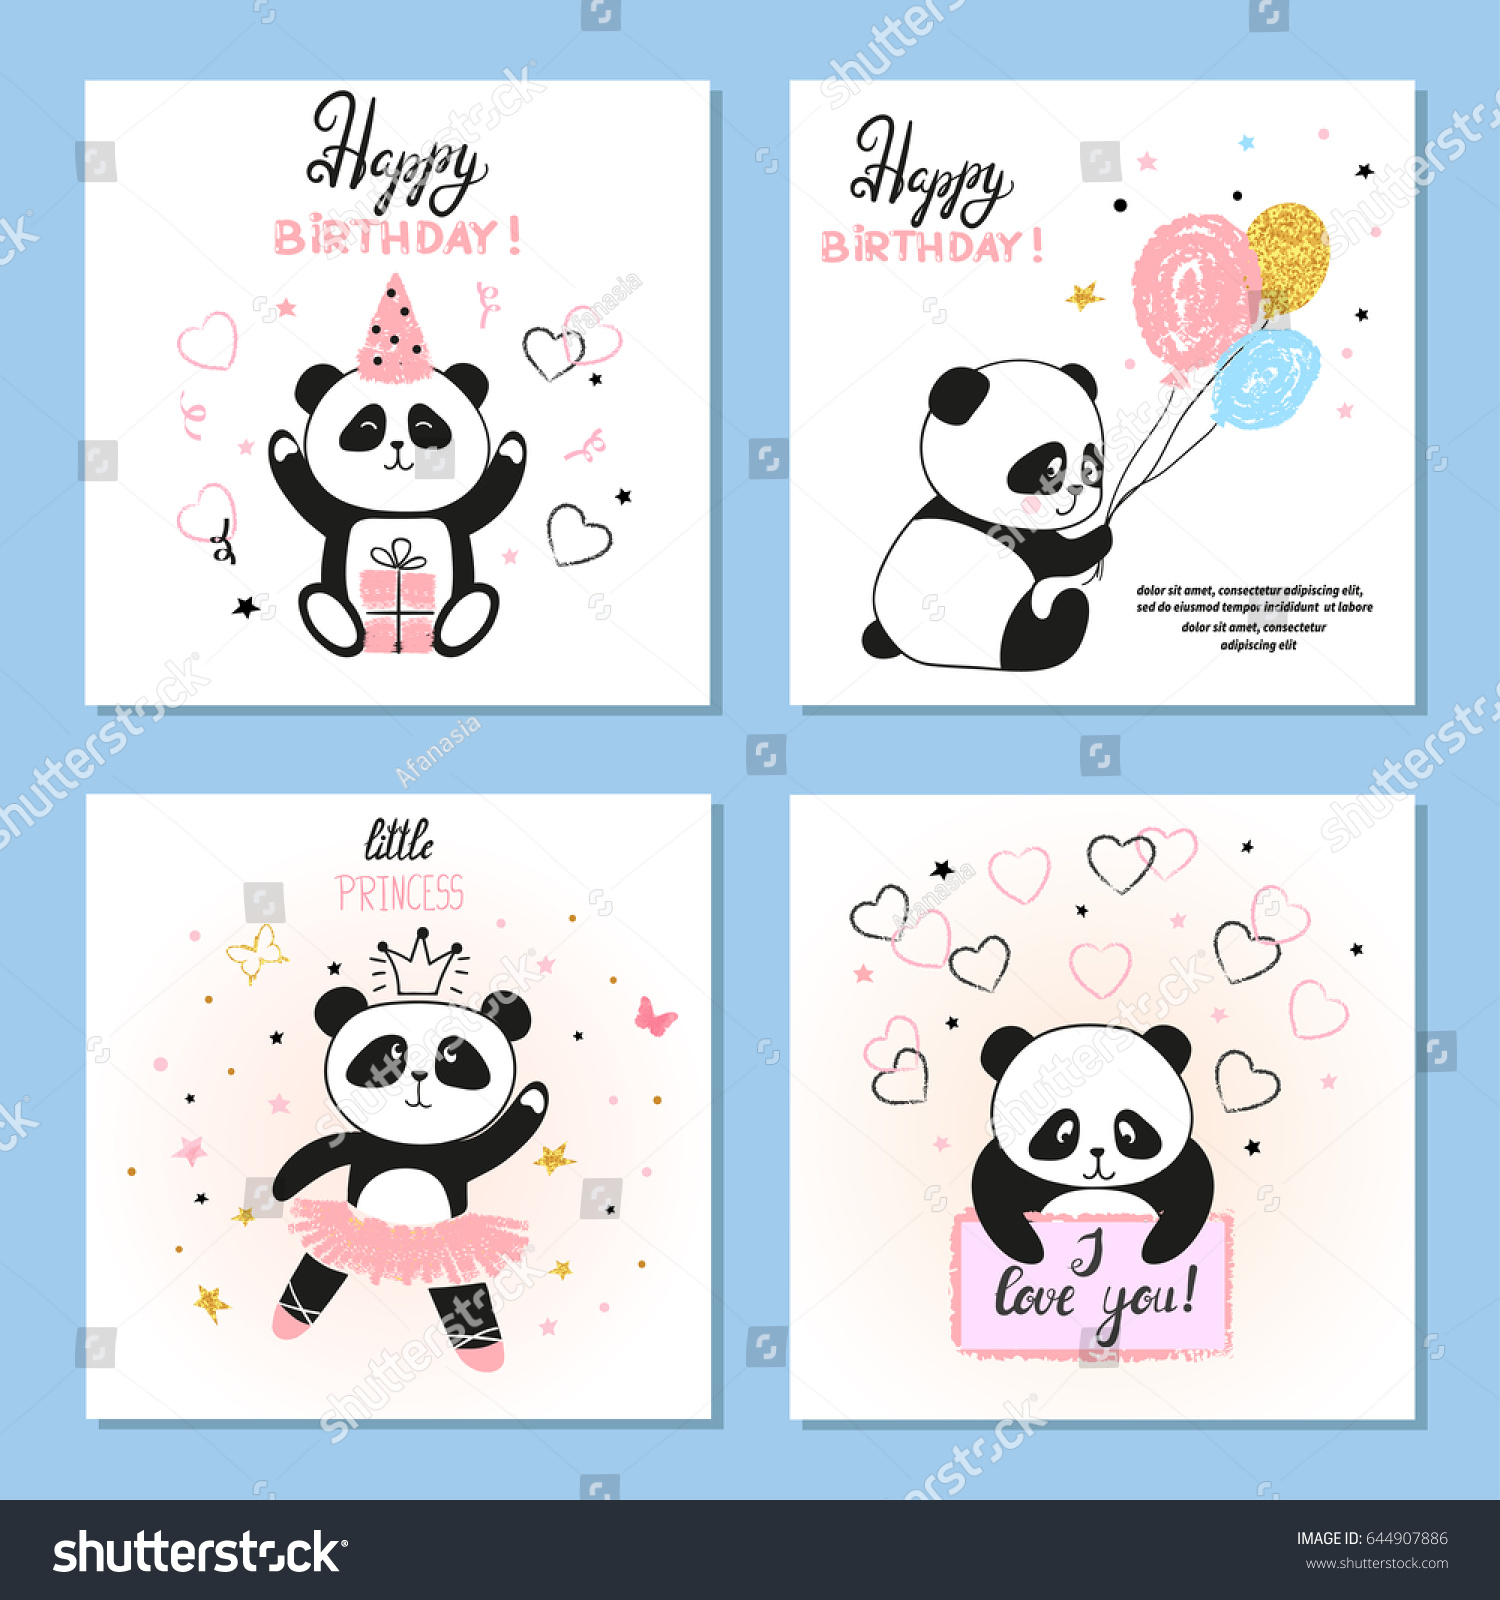 Cute Panda Bear Vector Illustrations Set Stock Vector 644907886